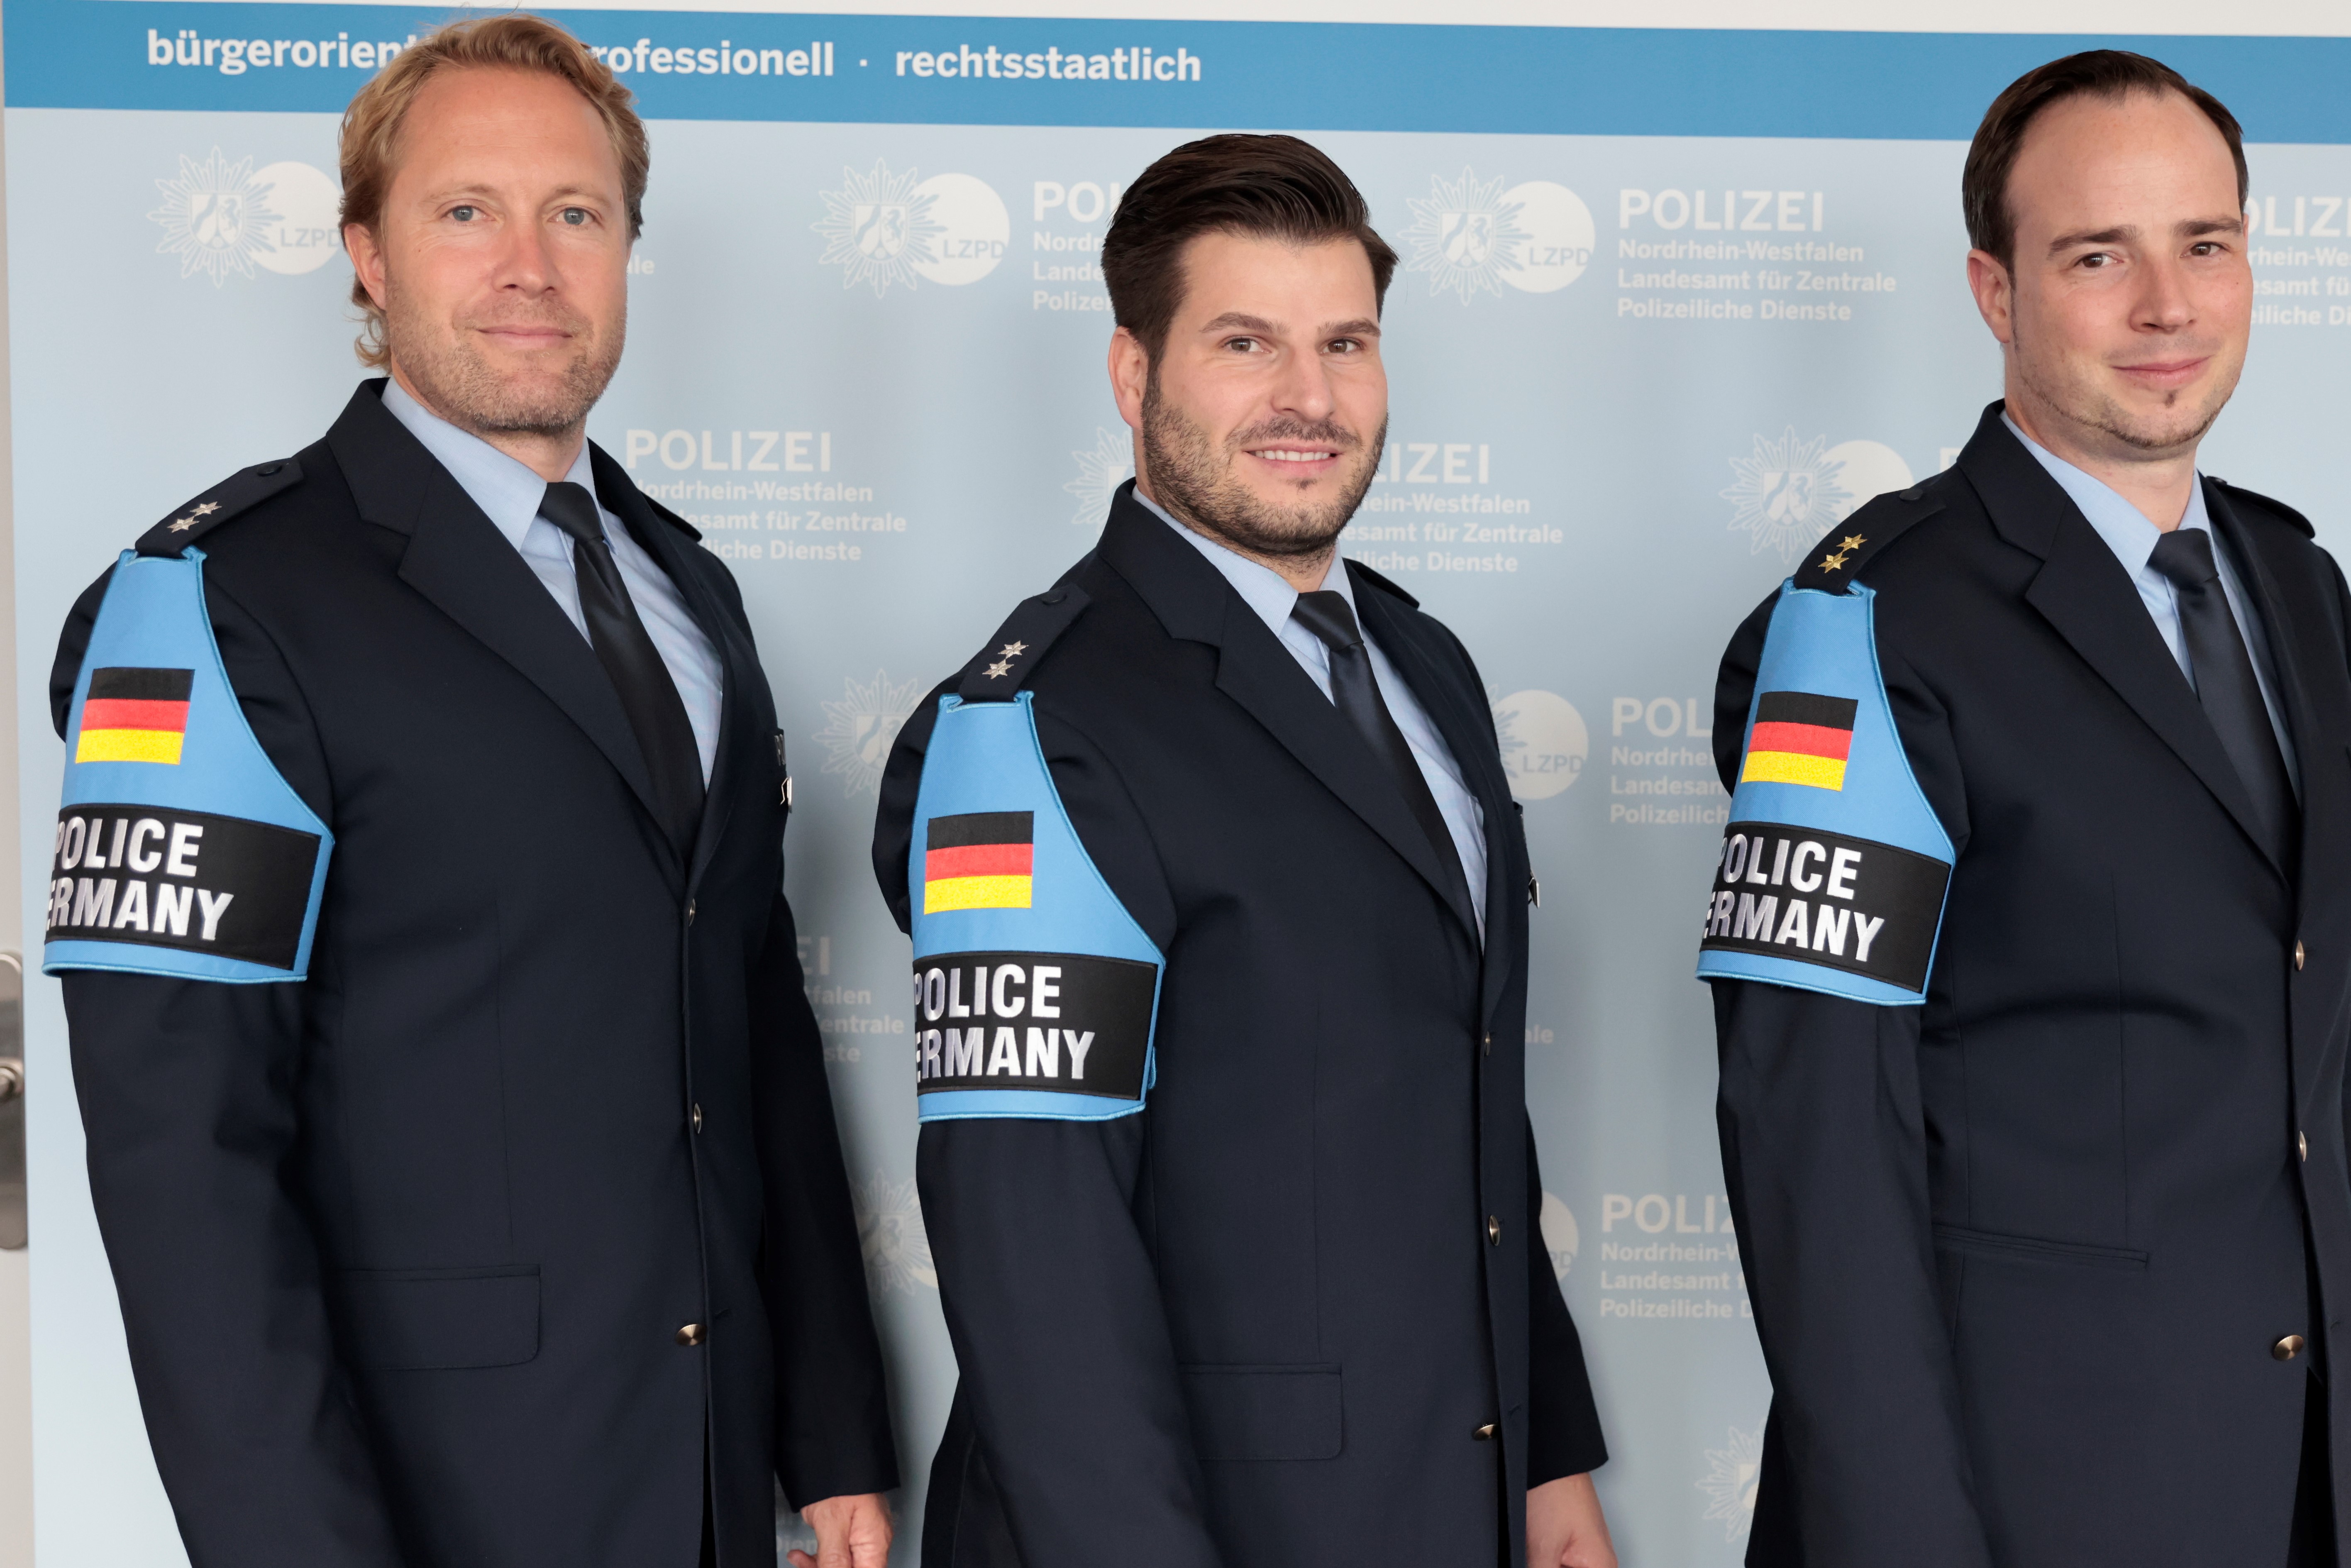 Polizeibeamte stehen nebeneinander. Am Arm tragen sie eine Kennzeichnung mit Deutschlandflagge und der Aufschrift Police Germany.